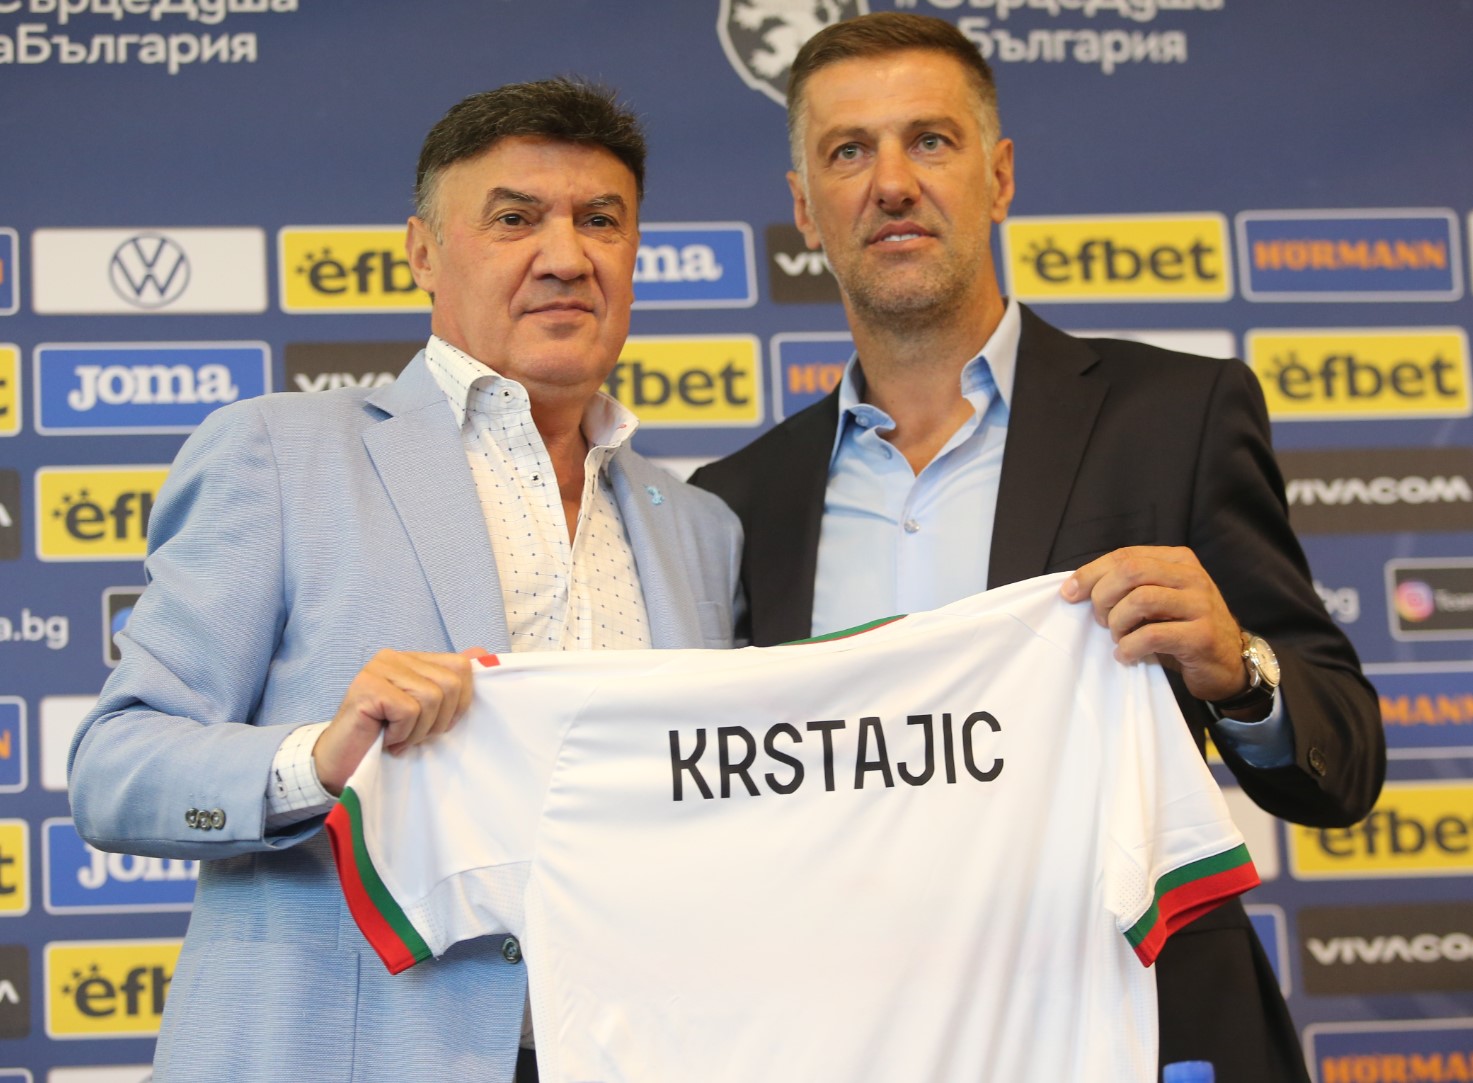 Сърбинът Младен Кръстаич е новият селекционер на националния отбор по футбол на България